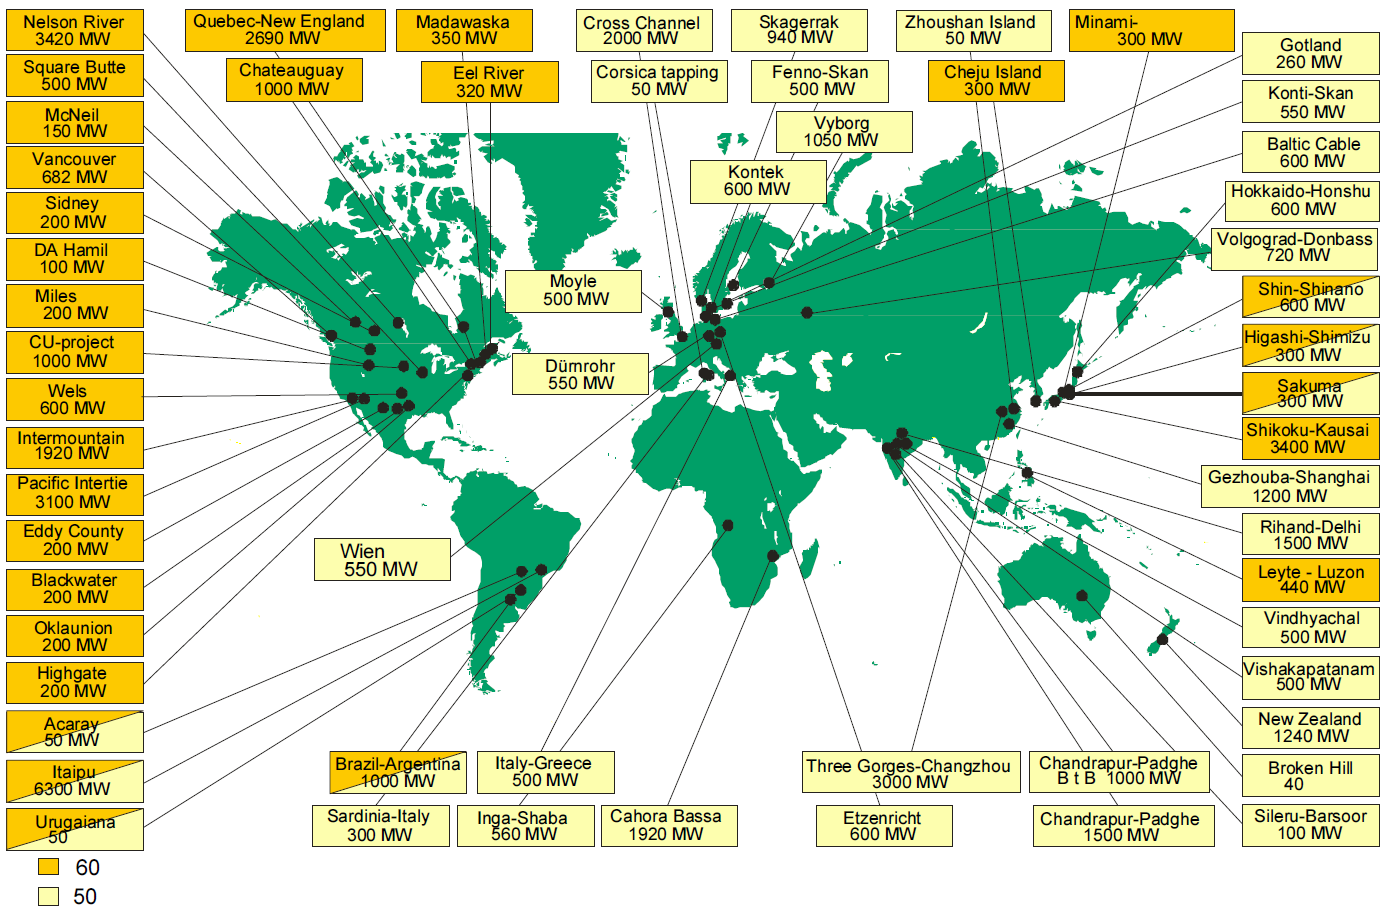 Σχήμα 2.2: Παγκόσμιος χάρτης HVDC διασυνδέσεων ανά περιοχή και διακινούμενη ισχύ [14] 2.